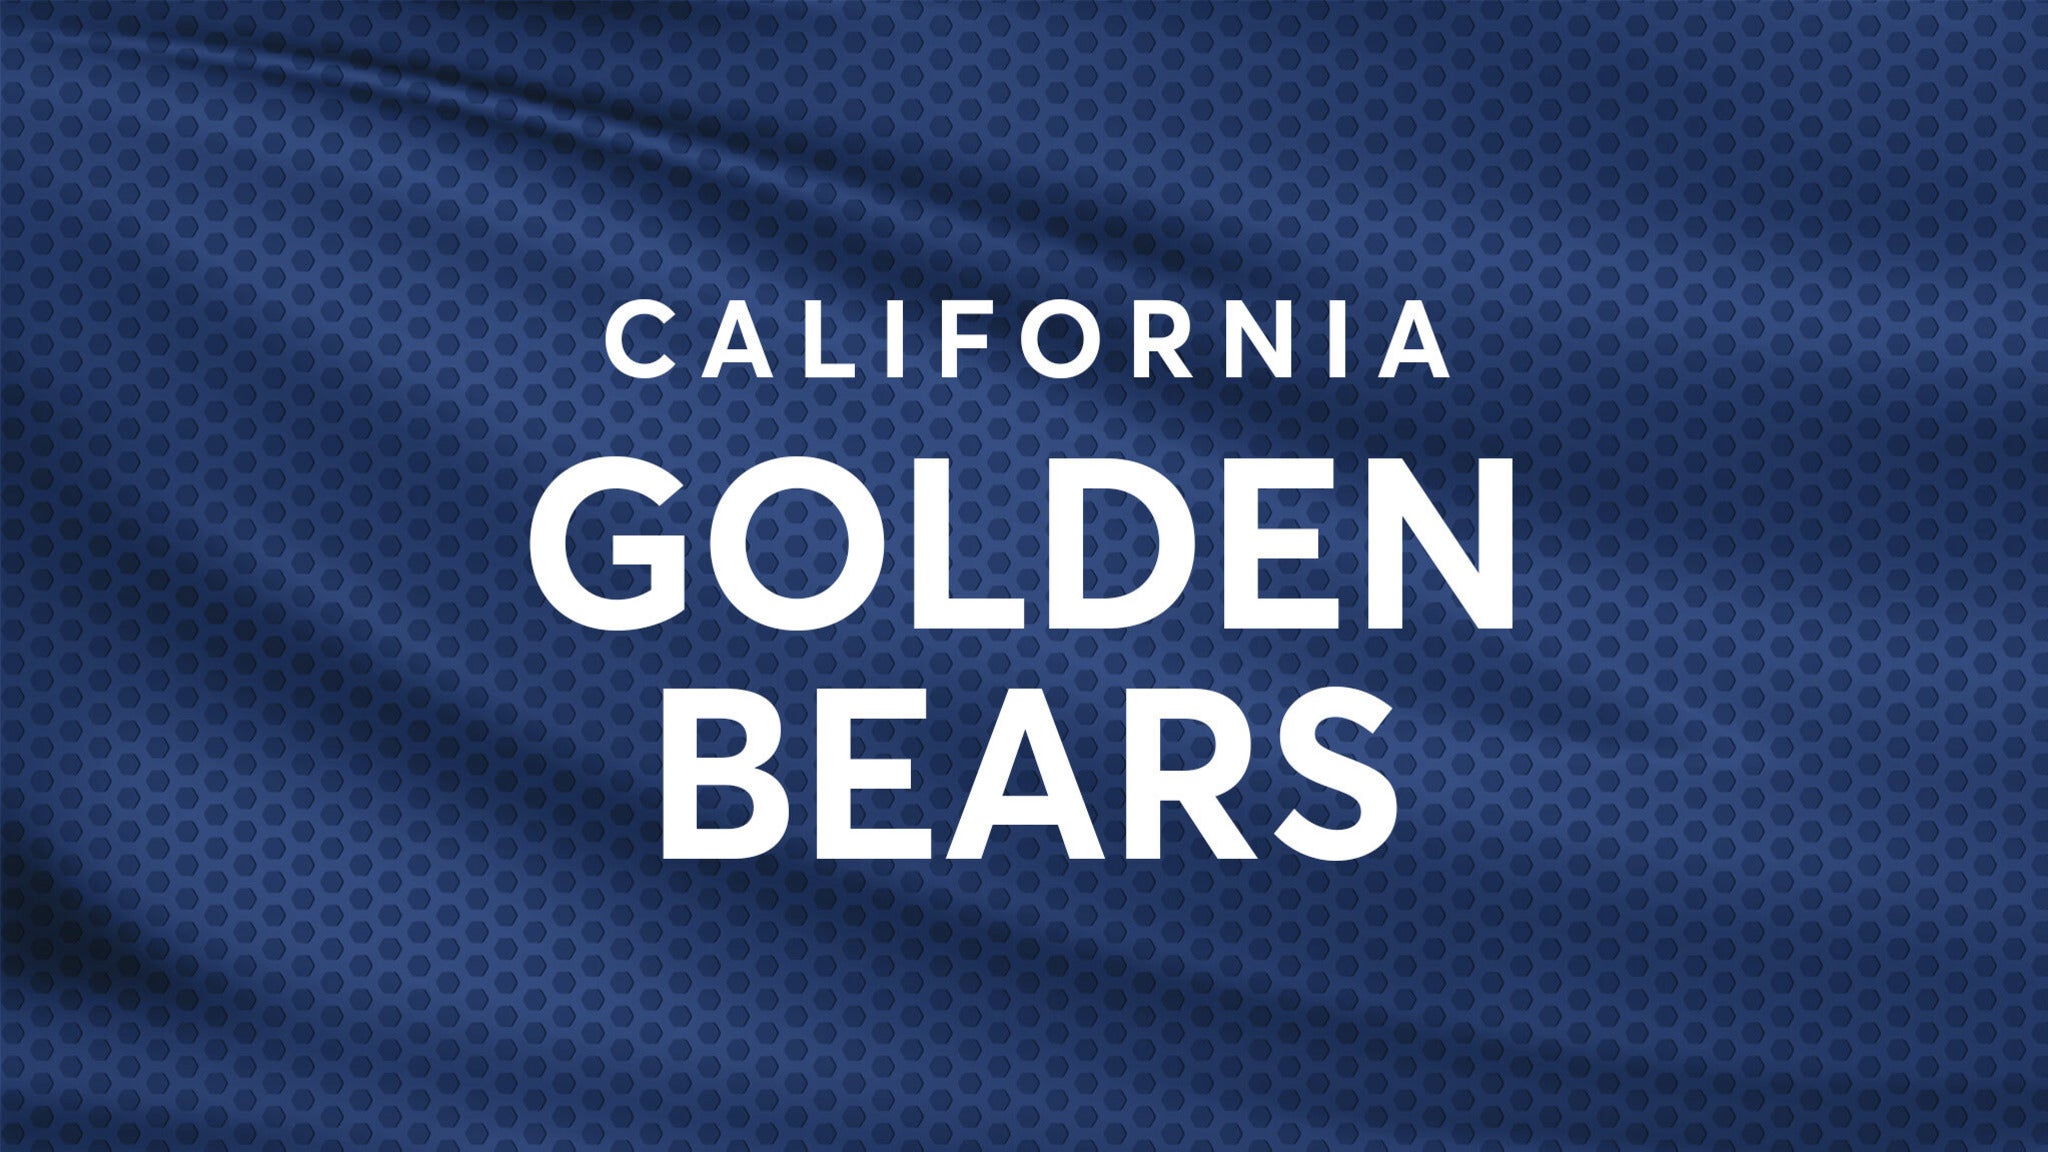 California Golden Bears Football vs. UNLV Rebels Football